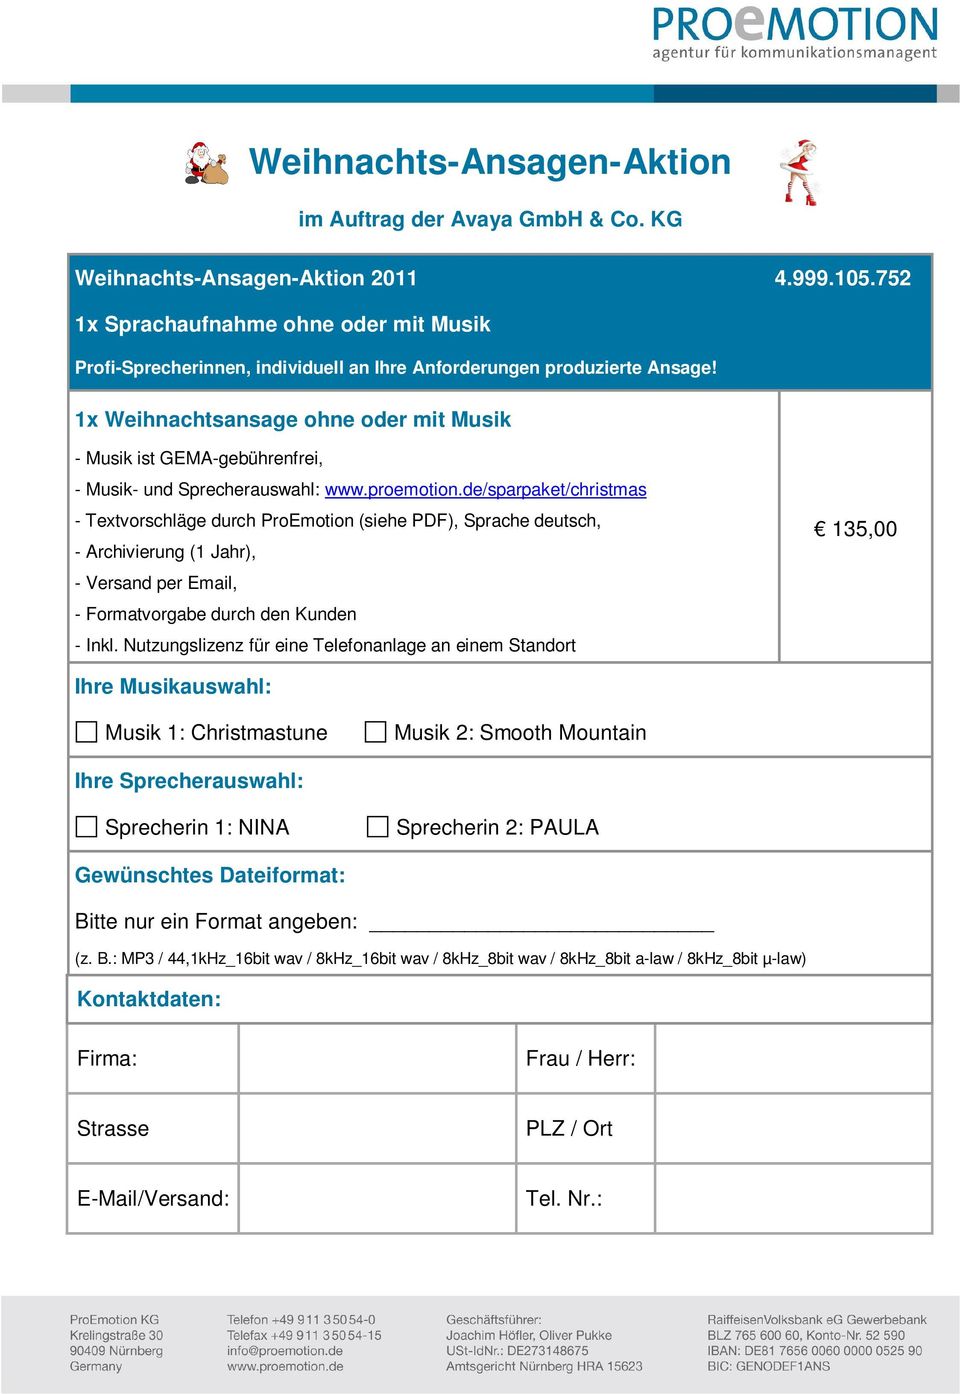 de/sparpaket/christmas - Textvorschläge durch ProEmotion (siehe PDF), Sprache deutsch, - Archivierung (1 Jahr), - Versand per Email, - Formatvorgabe durch den Kunden - Inkl.